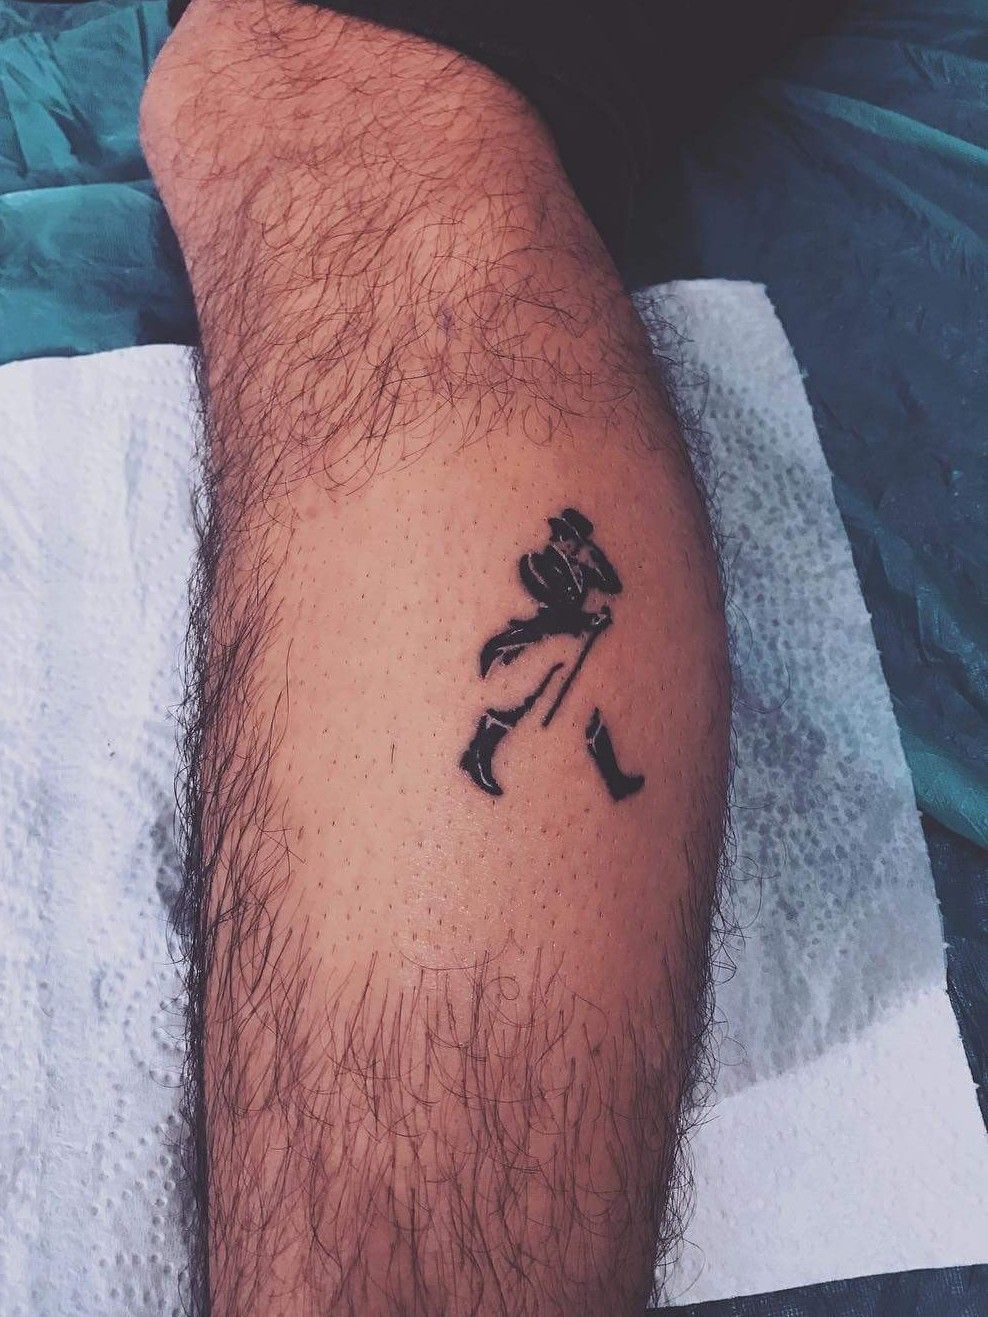 Portico Hen imod alene walker' in Tattoos • Search in +1.3M Tattoos Now • Tattoodo